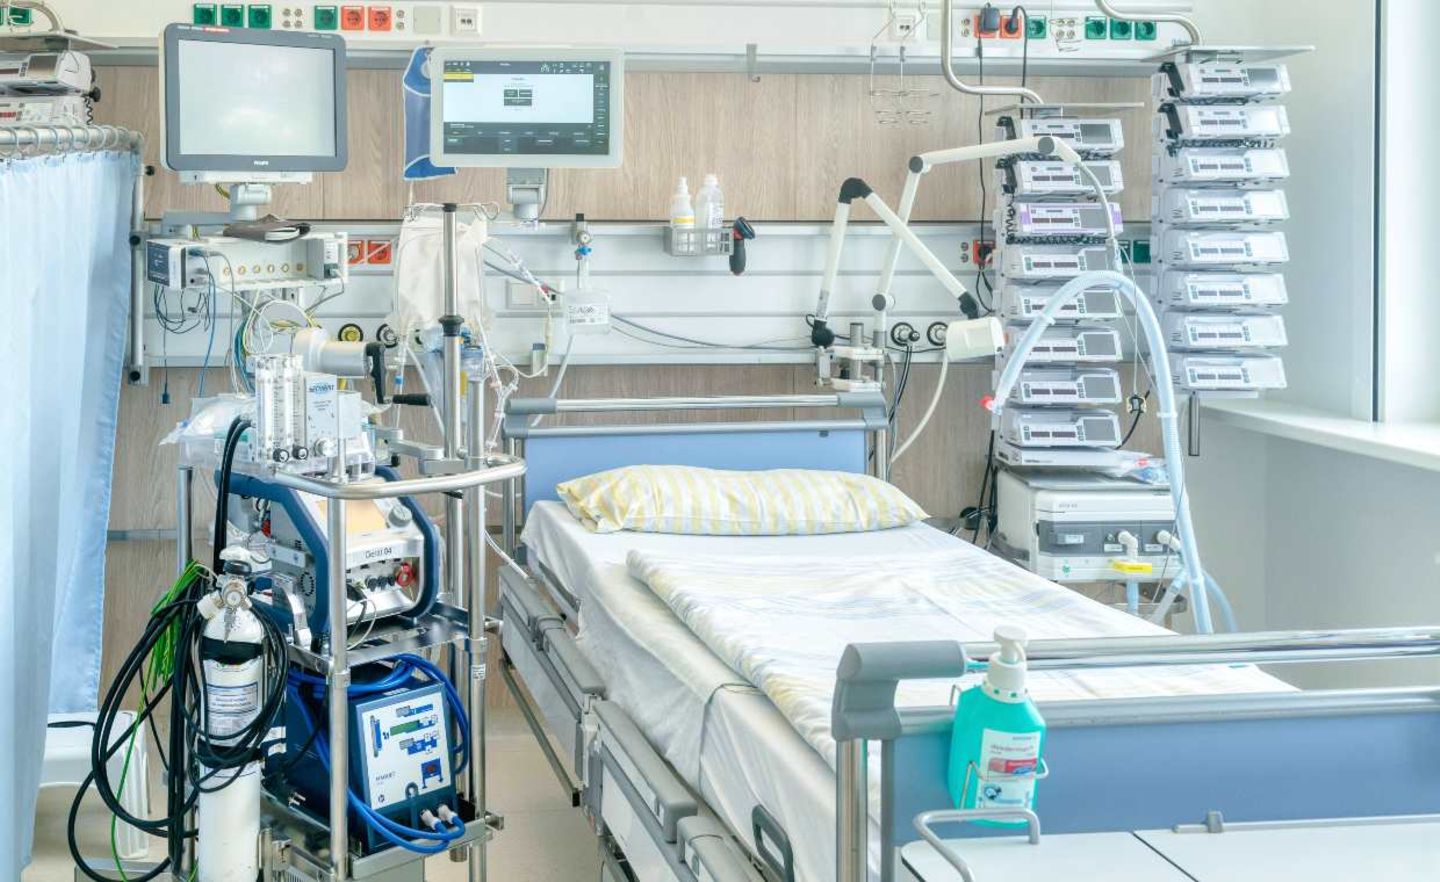 Ein Intensivbett in einer Intensivstation der Uniklinik Dresden. Links neben dem Bett steht eine Herz-Lungen-Maschine, oben die Überwachungsmonitore für die Vitalfunktionen. Rechts neben dem Bett steht ein Beatmungsgerät und Infusionstechnik. Mit dieser Technik können schwerkranke Patienten optimal versorgt werden